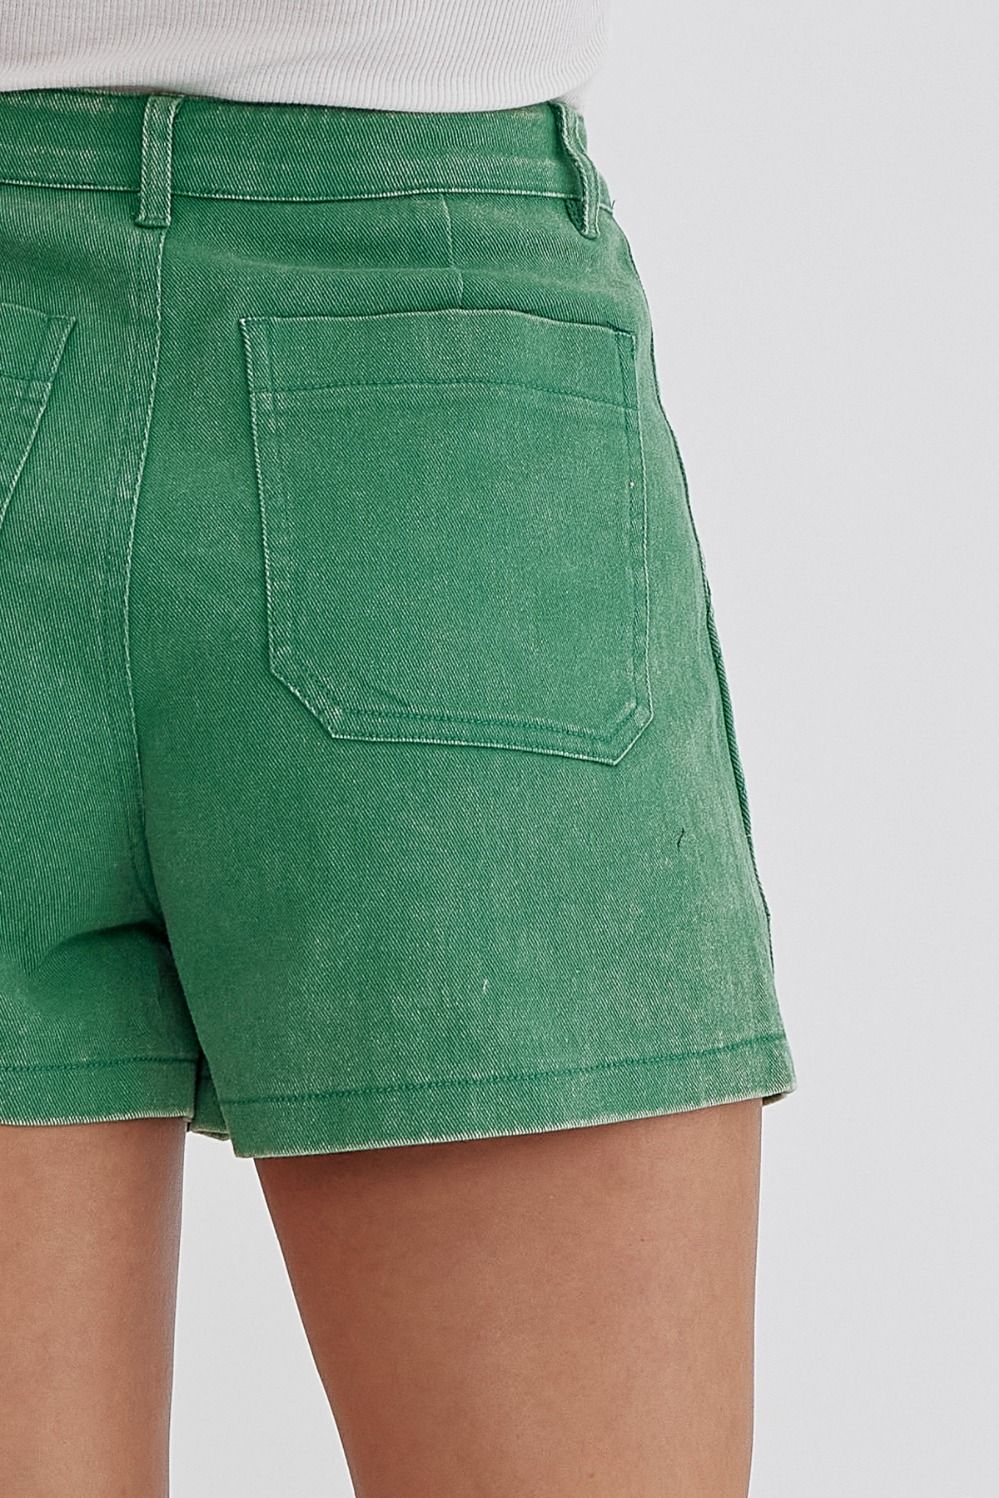 Britlyn Denim Shorts (Green)